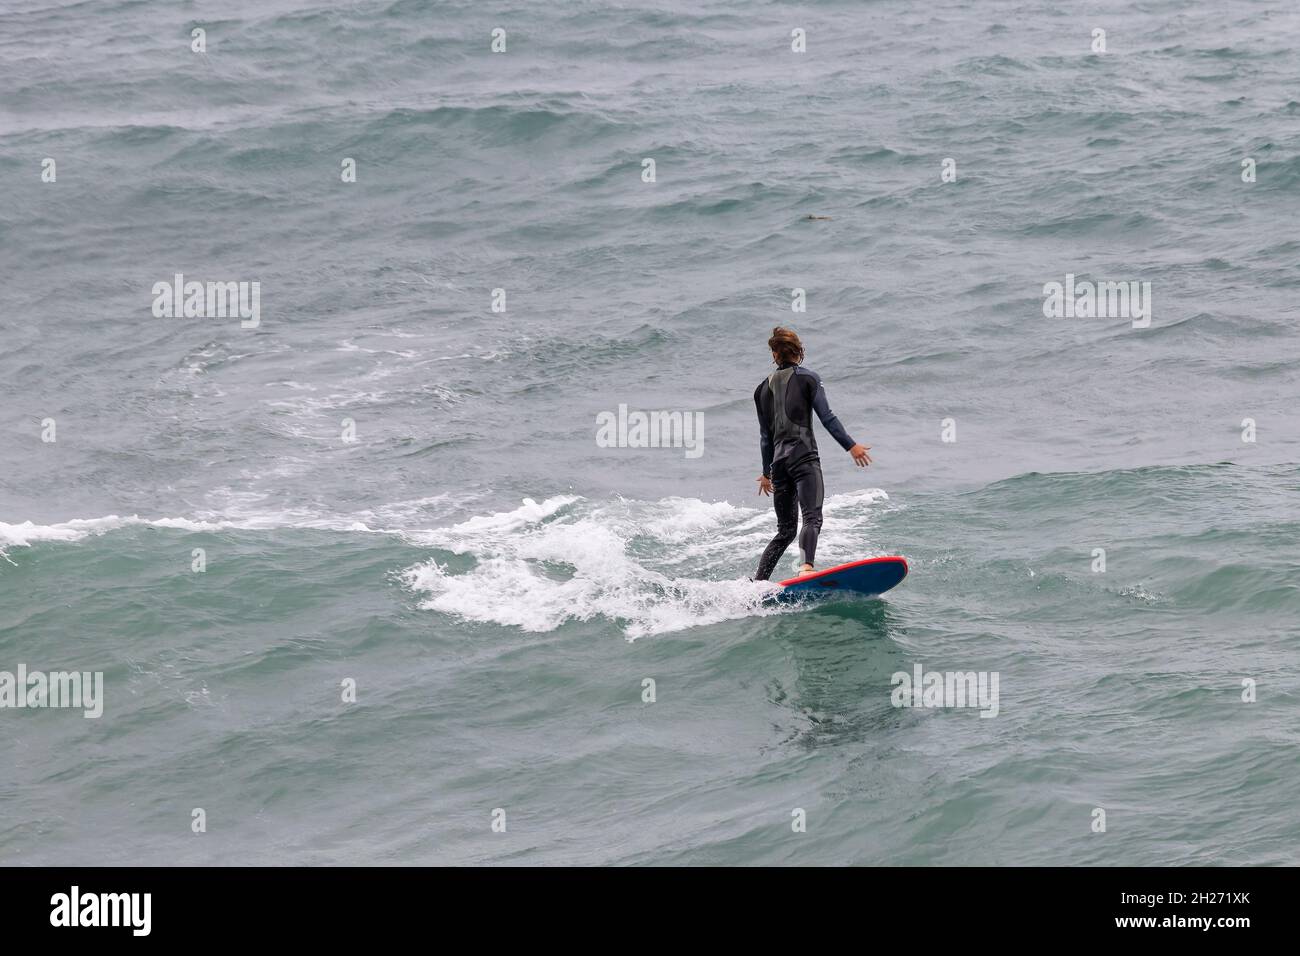 la surfeuse en combinaison attrape une vague Banque D'Images